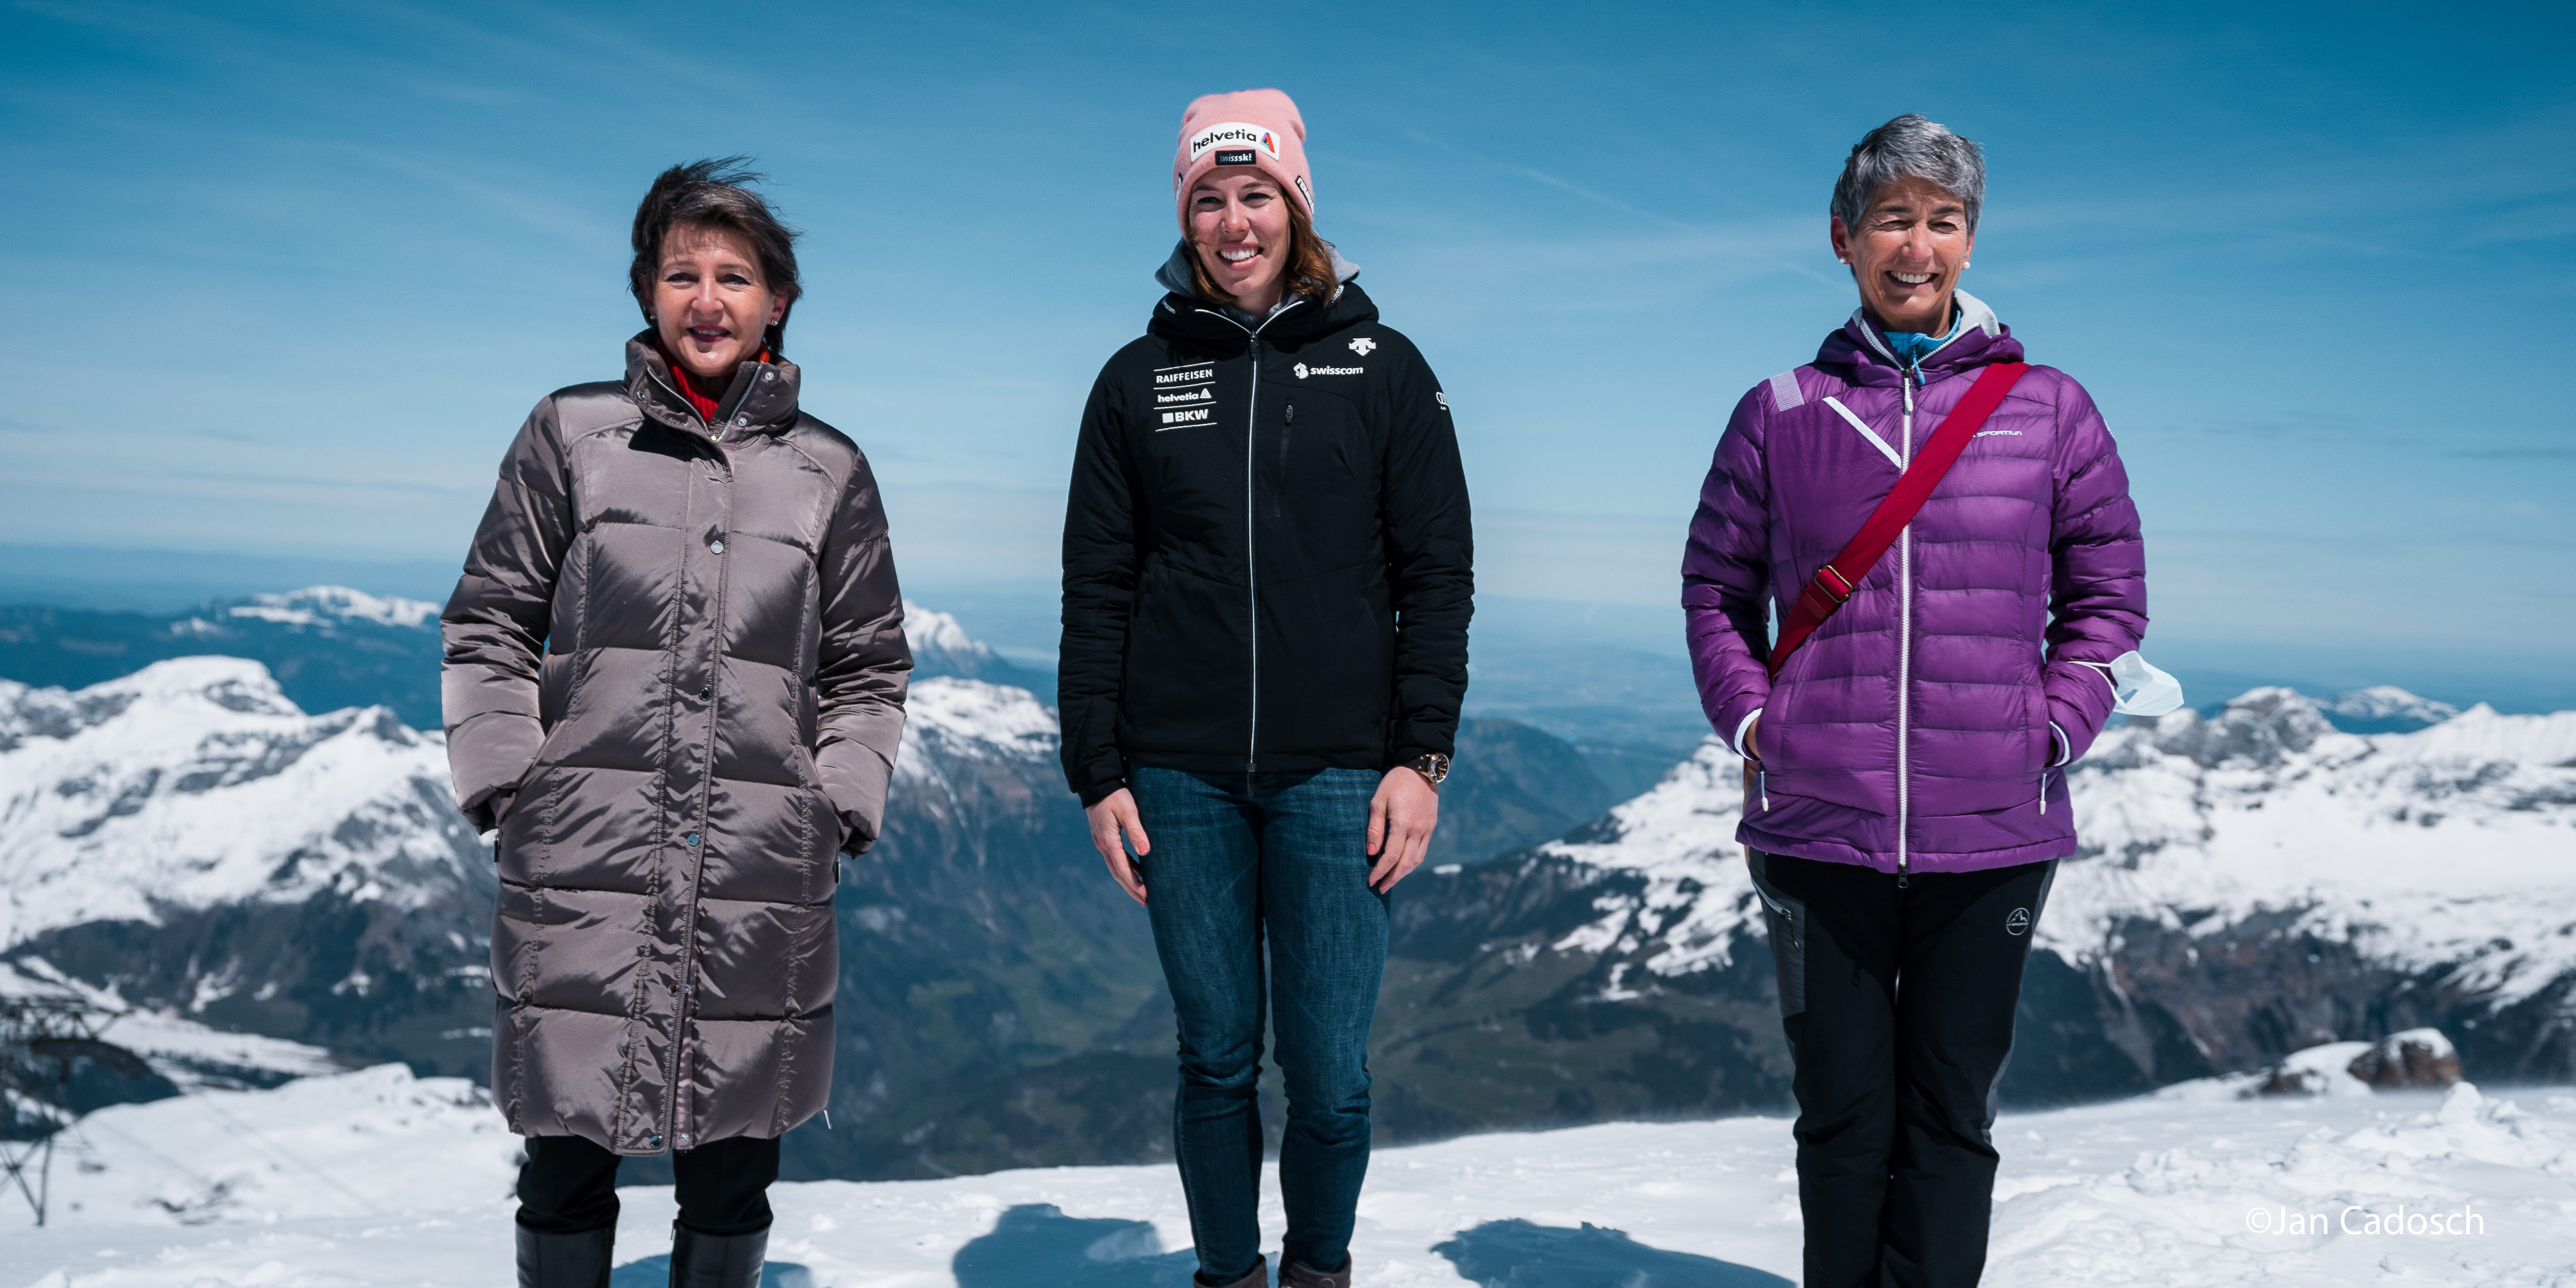 De gauche à droite : la conseillère fédérale Simonetta Sommaruga, Michelle Gisin, skieuse et ambassadrice de Protect Our Winters, et Françoise Jaquet, présidente du Club Alpin Suisse (CAS)